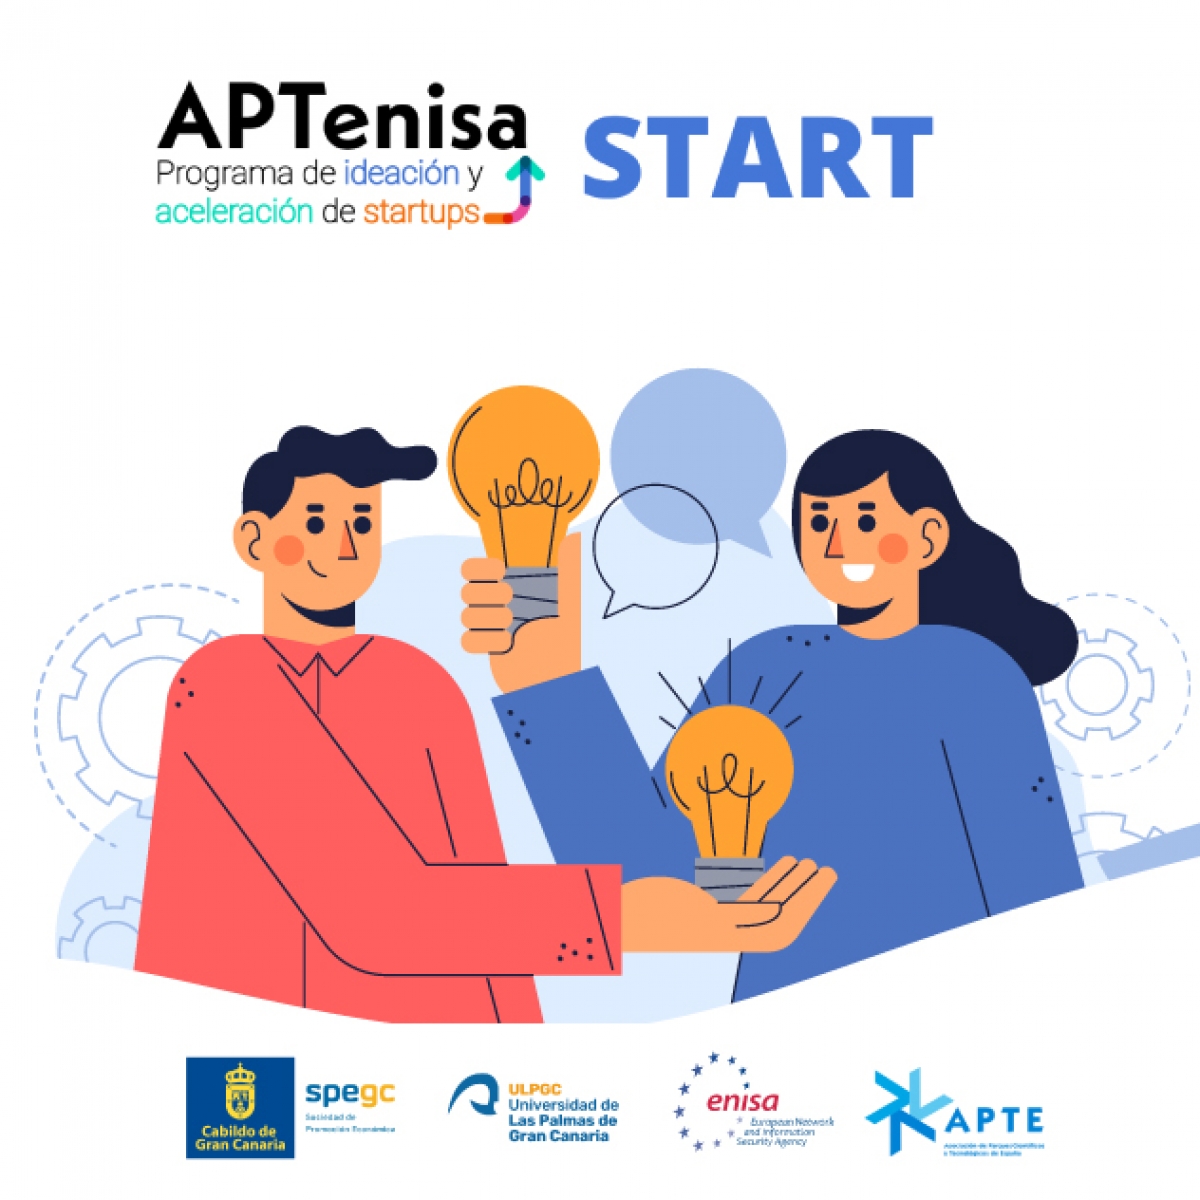 APTENISA - Programa de ideación y aceleración de startups